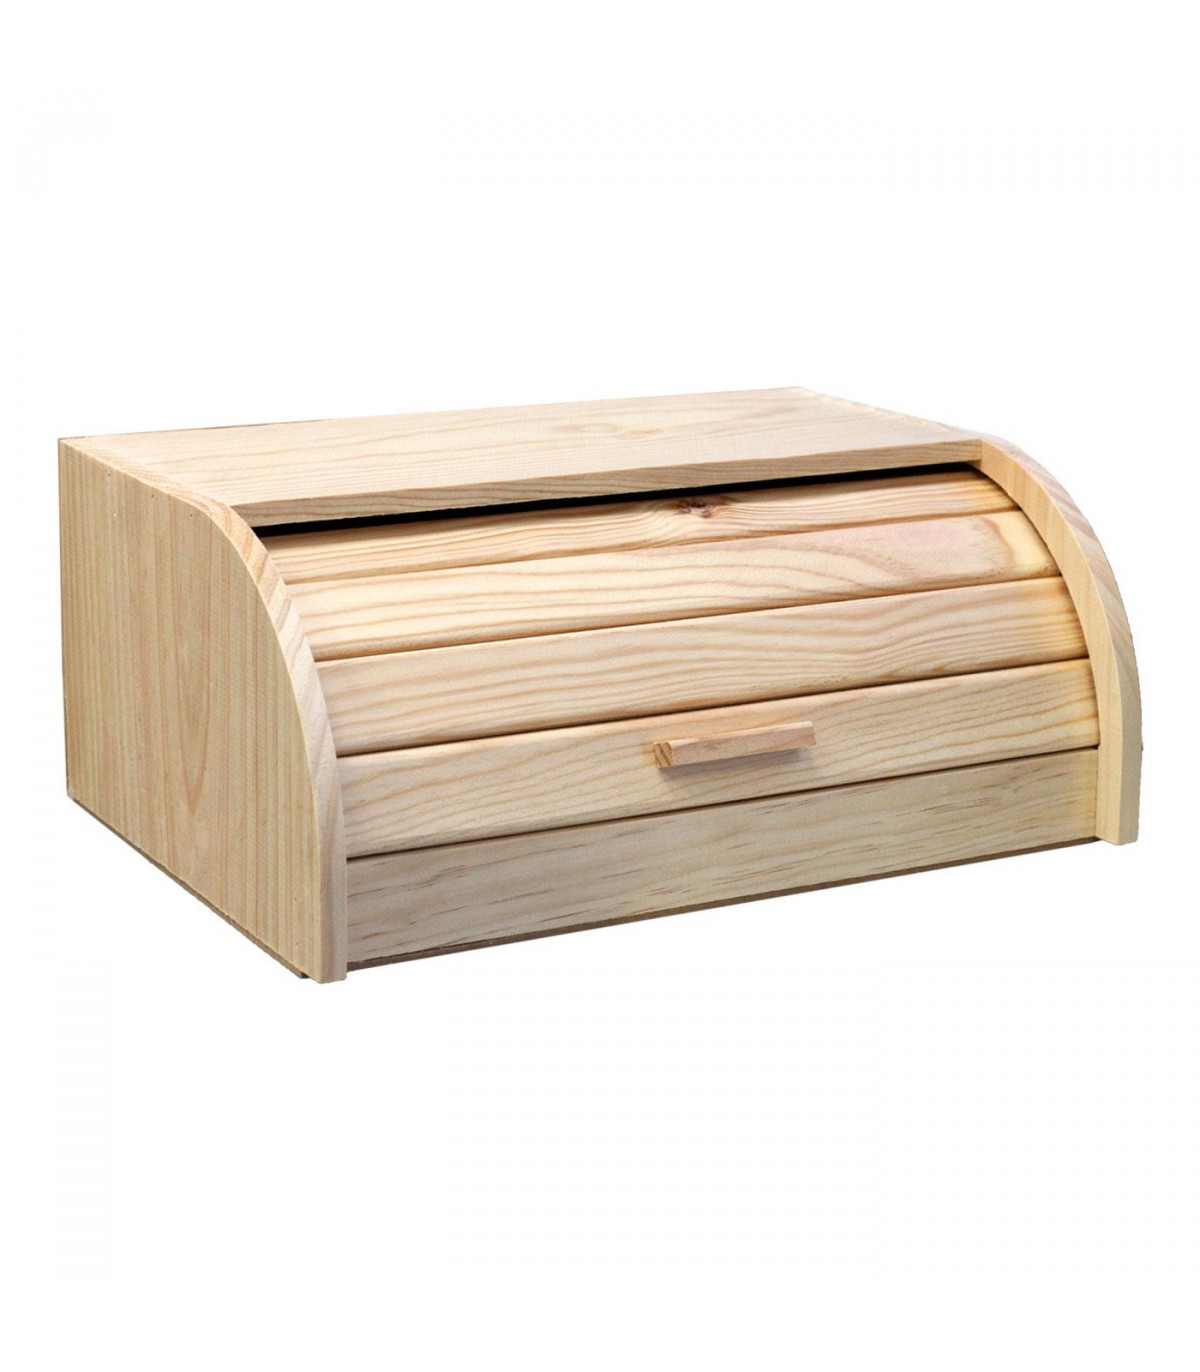 Artema - Panera de madera con tapa de persiana, de 15,5 x 48,1 x